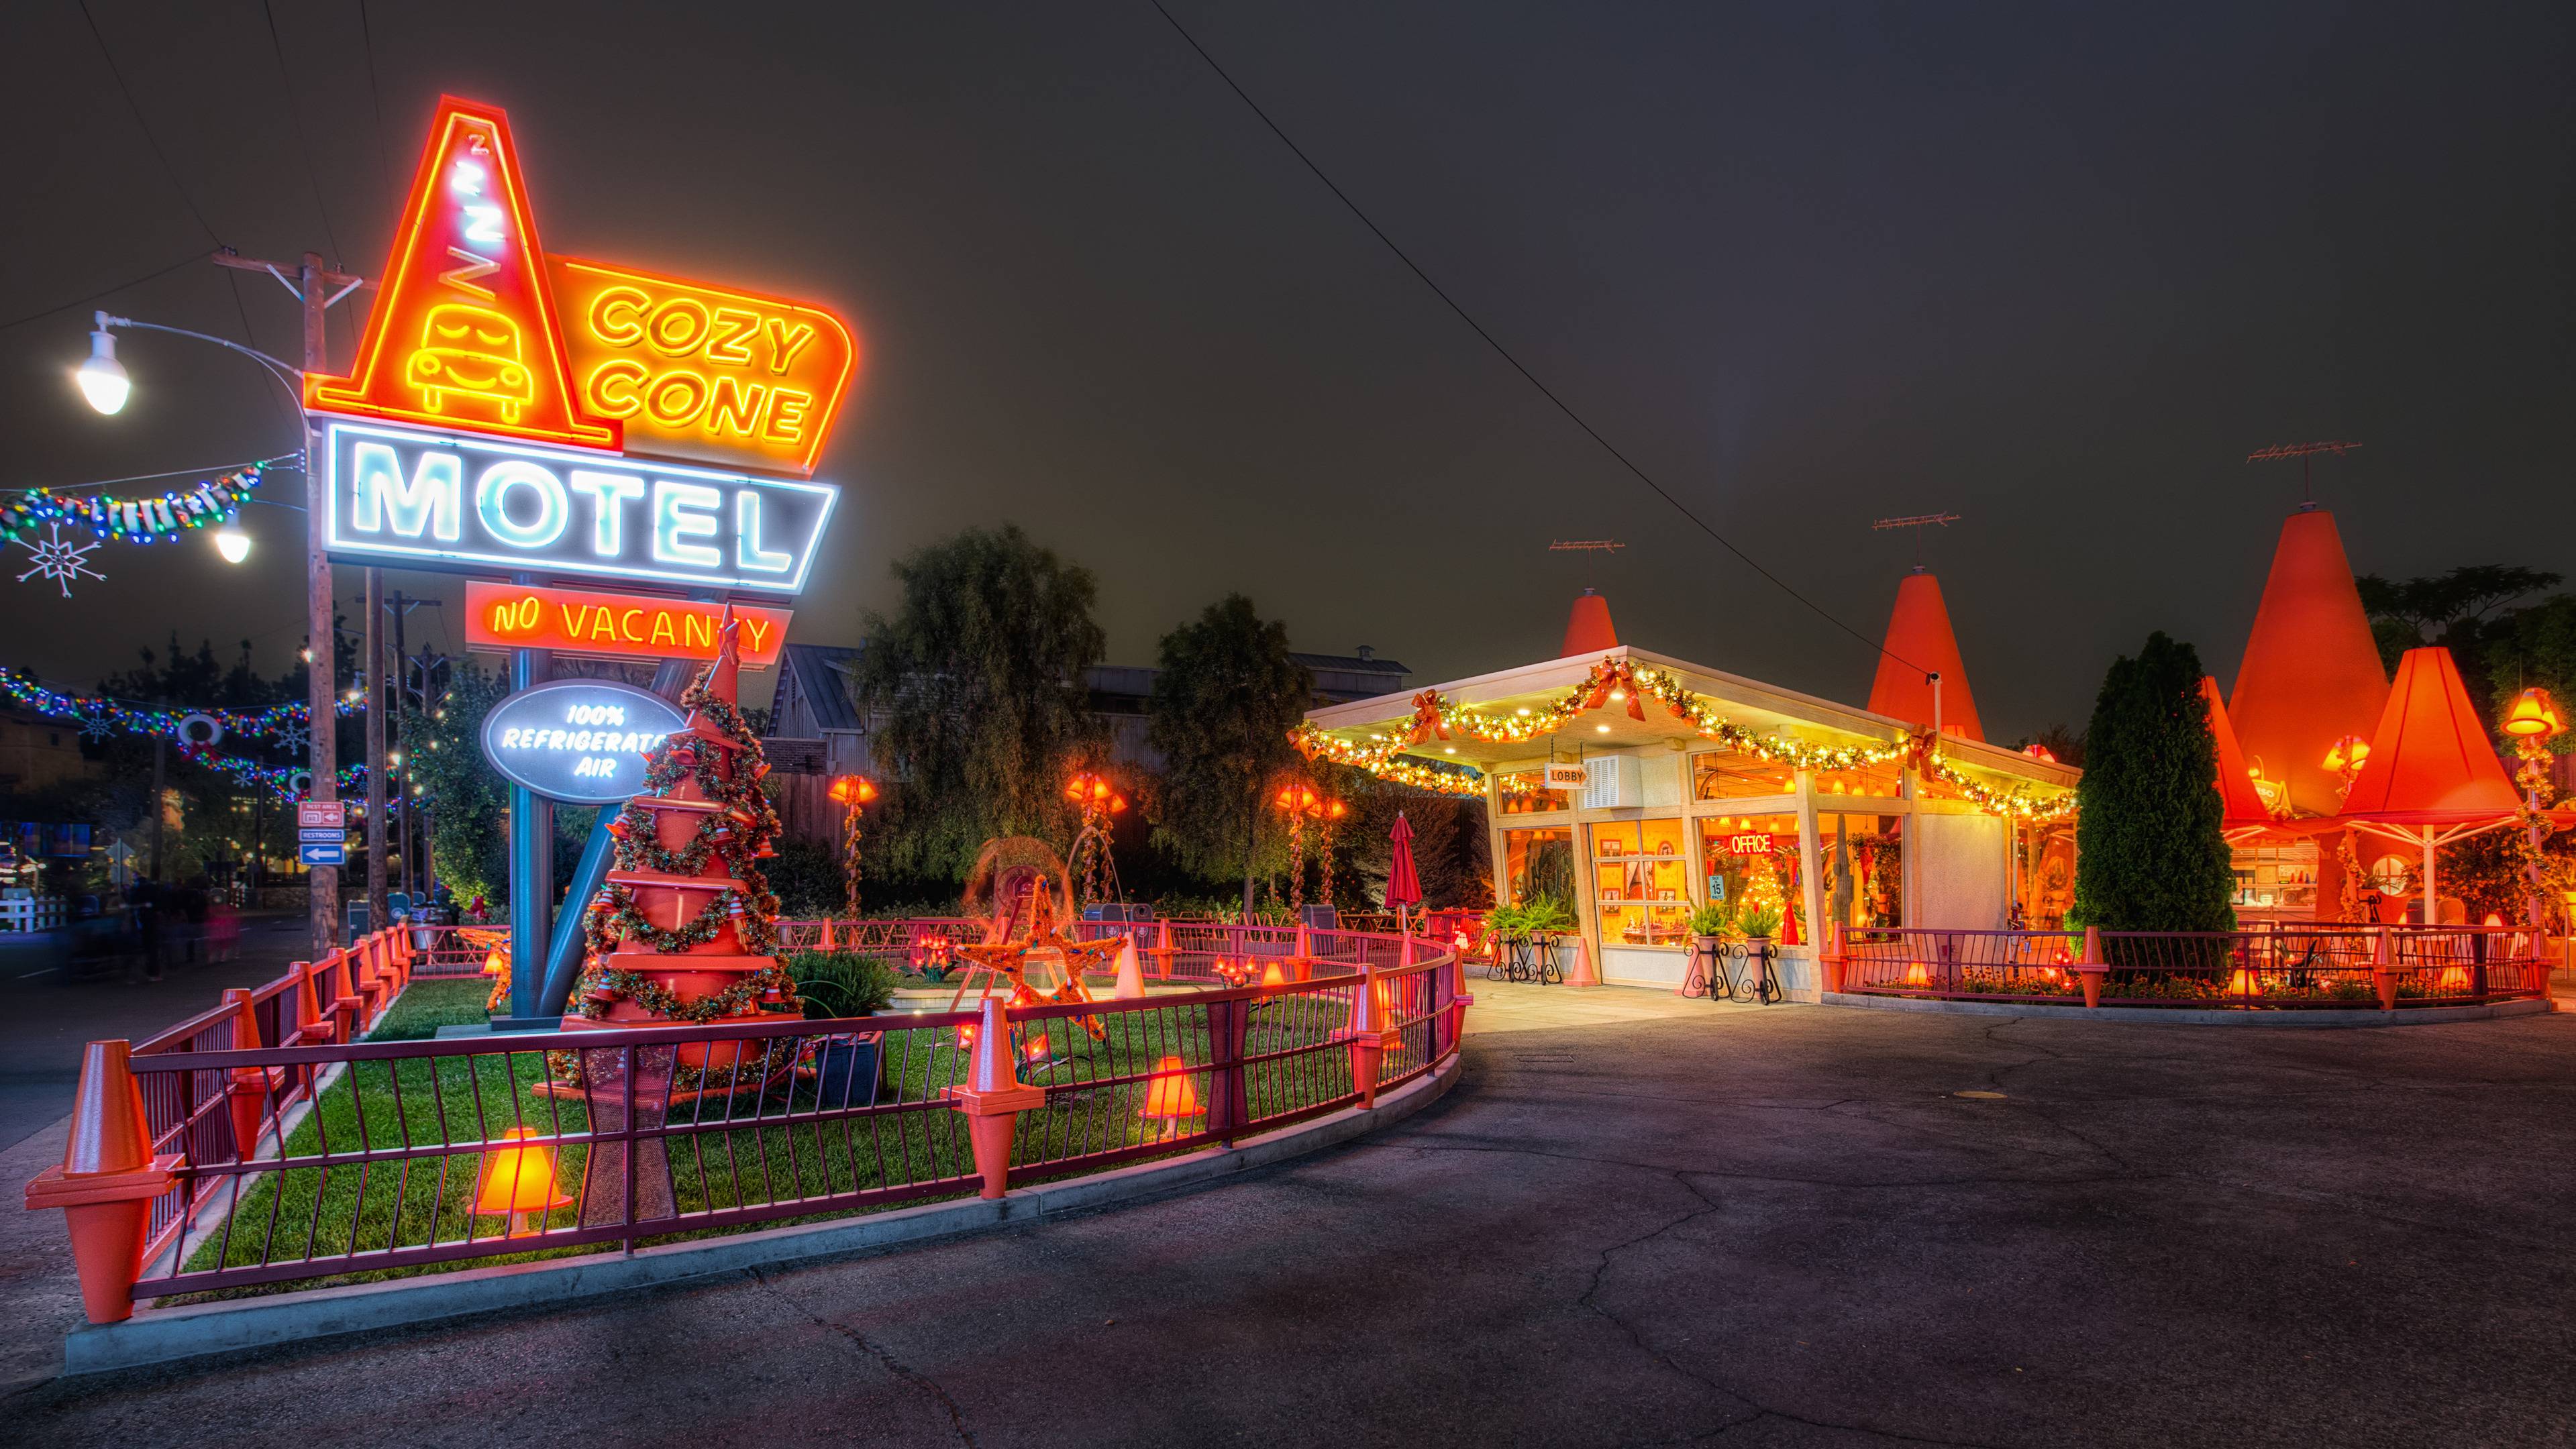 Cozy Cone Motel, Disneyland widescreen wallpaper. Wide